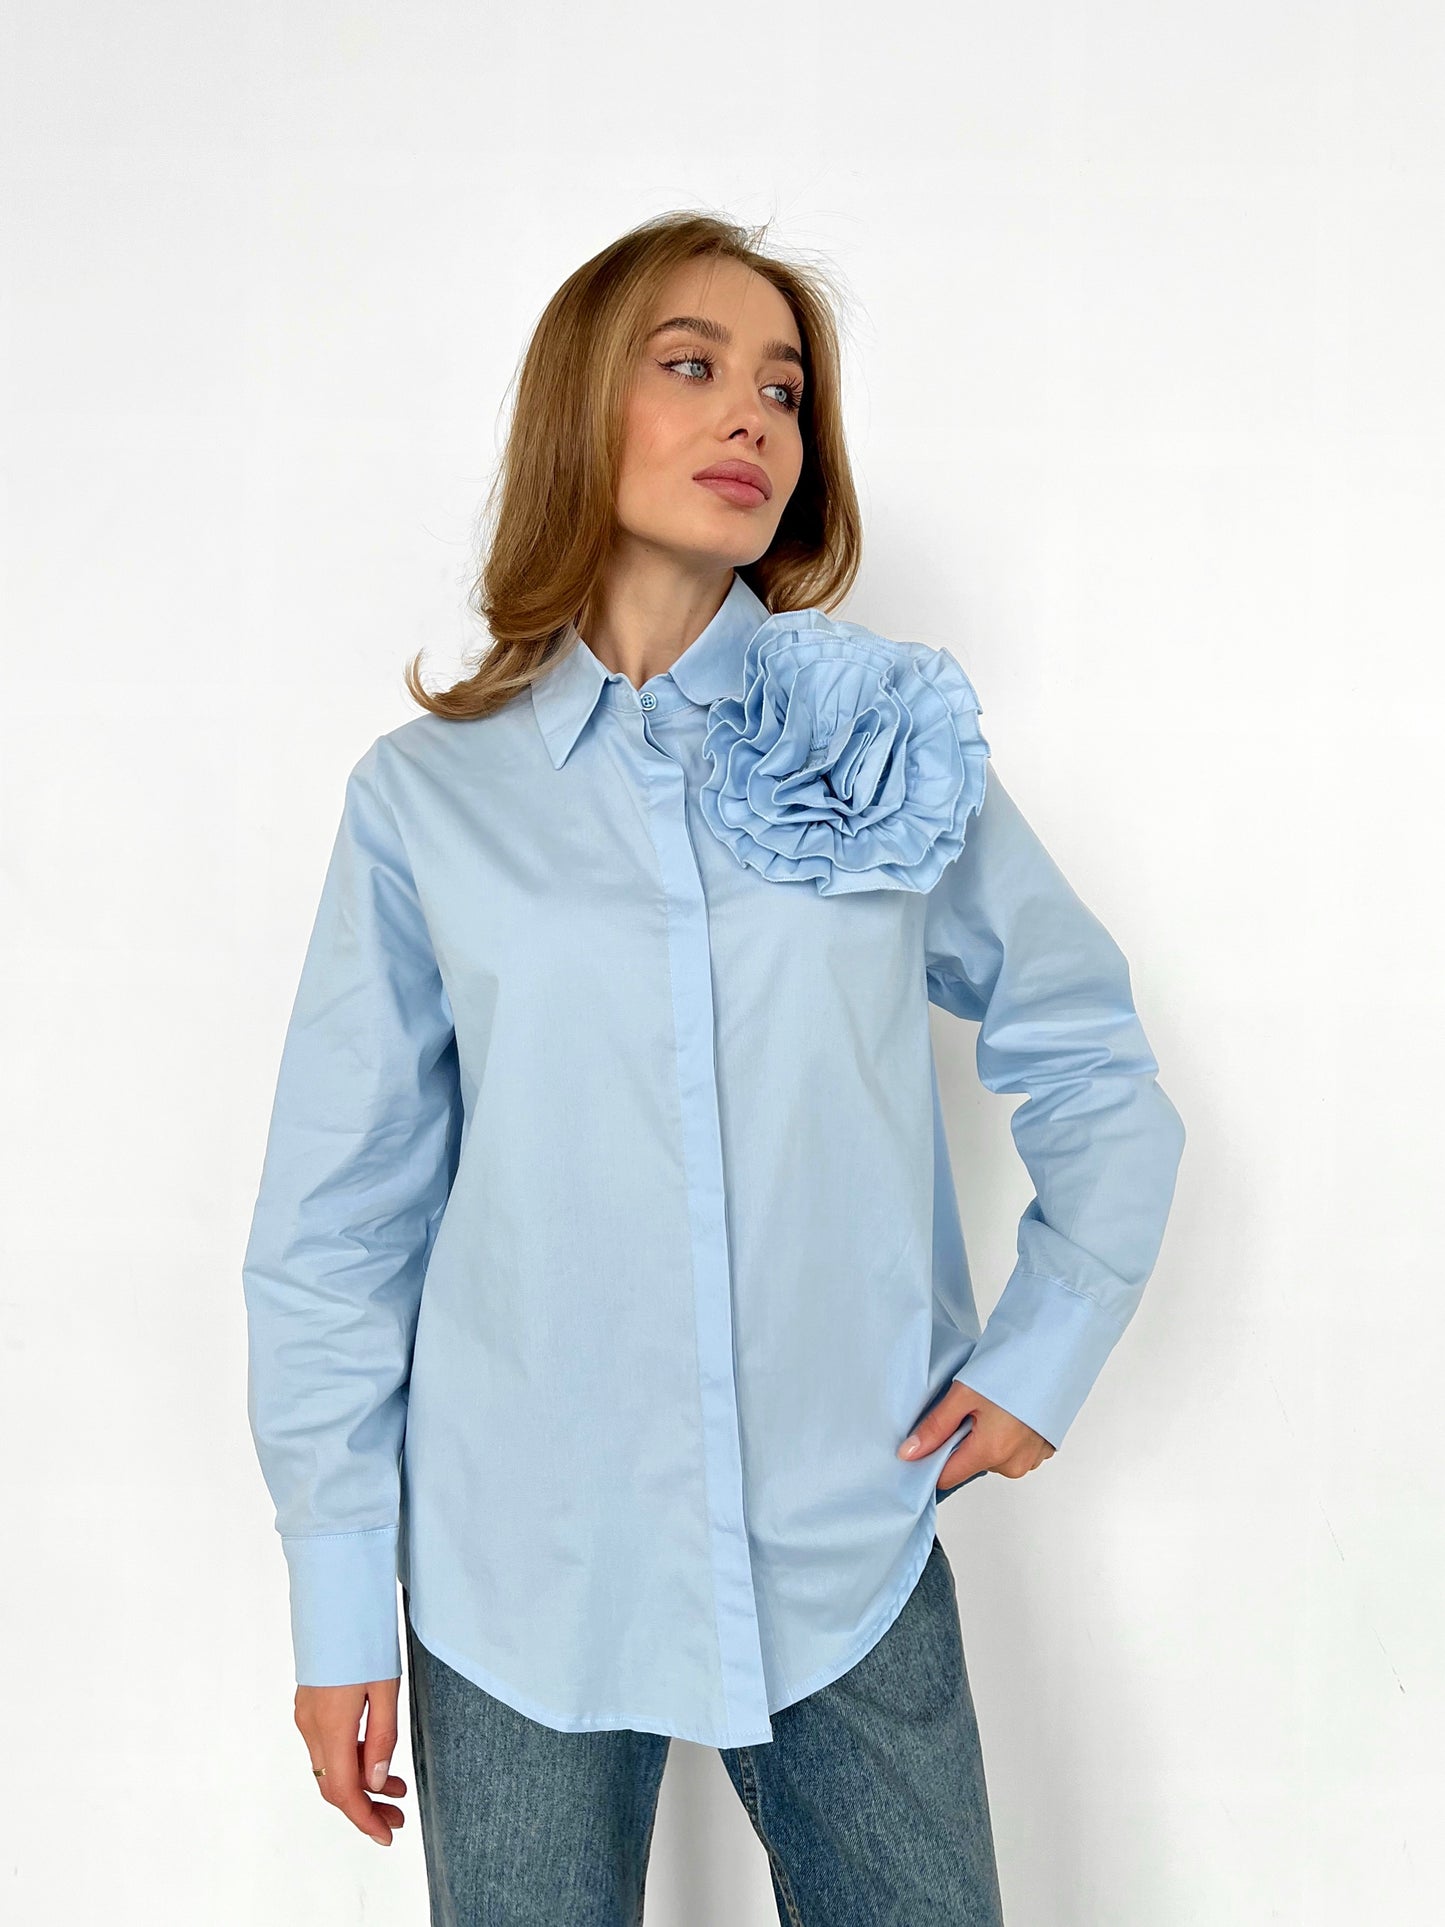 Women's shirt FLOWER  Blue